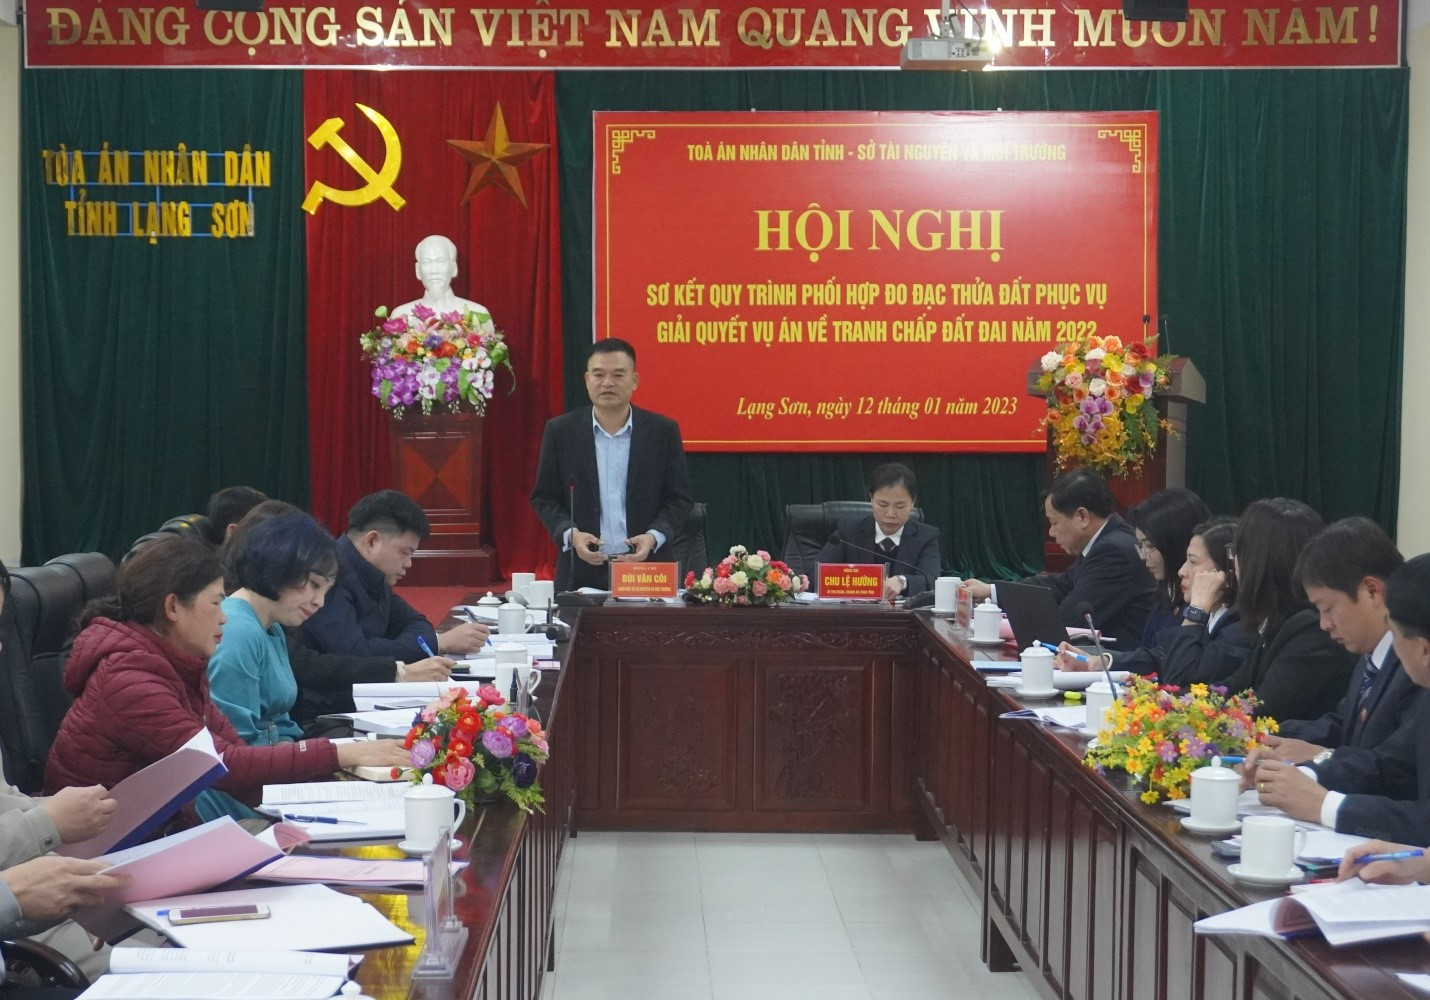 TAND tỉnh Lạng Sơn tổ chức Hội nghị sơ kết phối hợp đo đạc và giải quyết các vụ án về tranh chấp đất đai